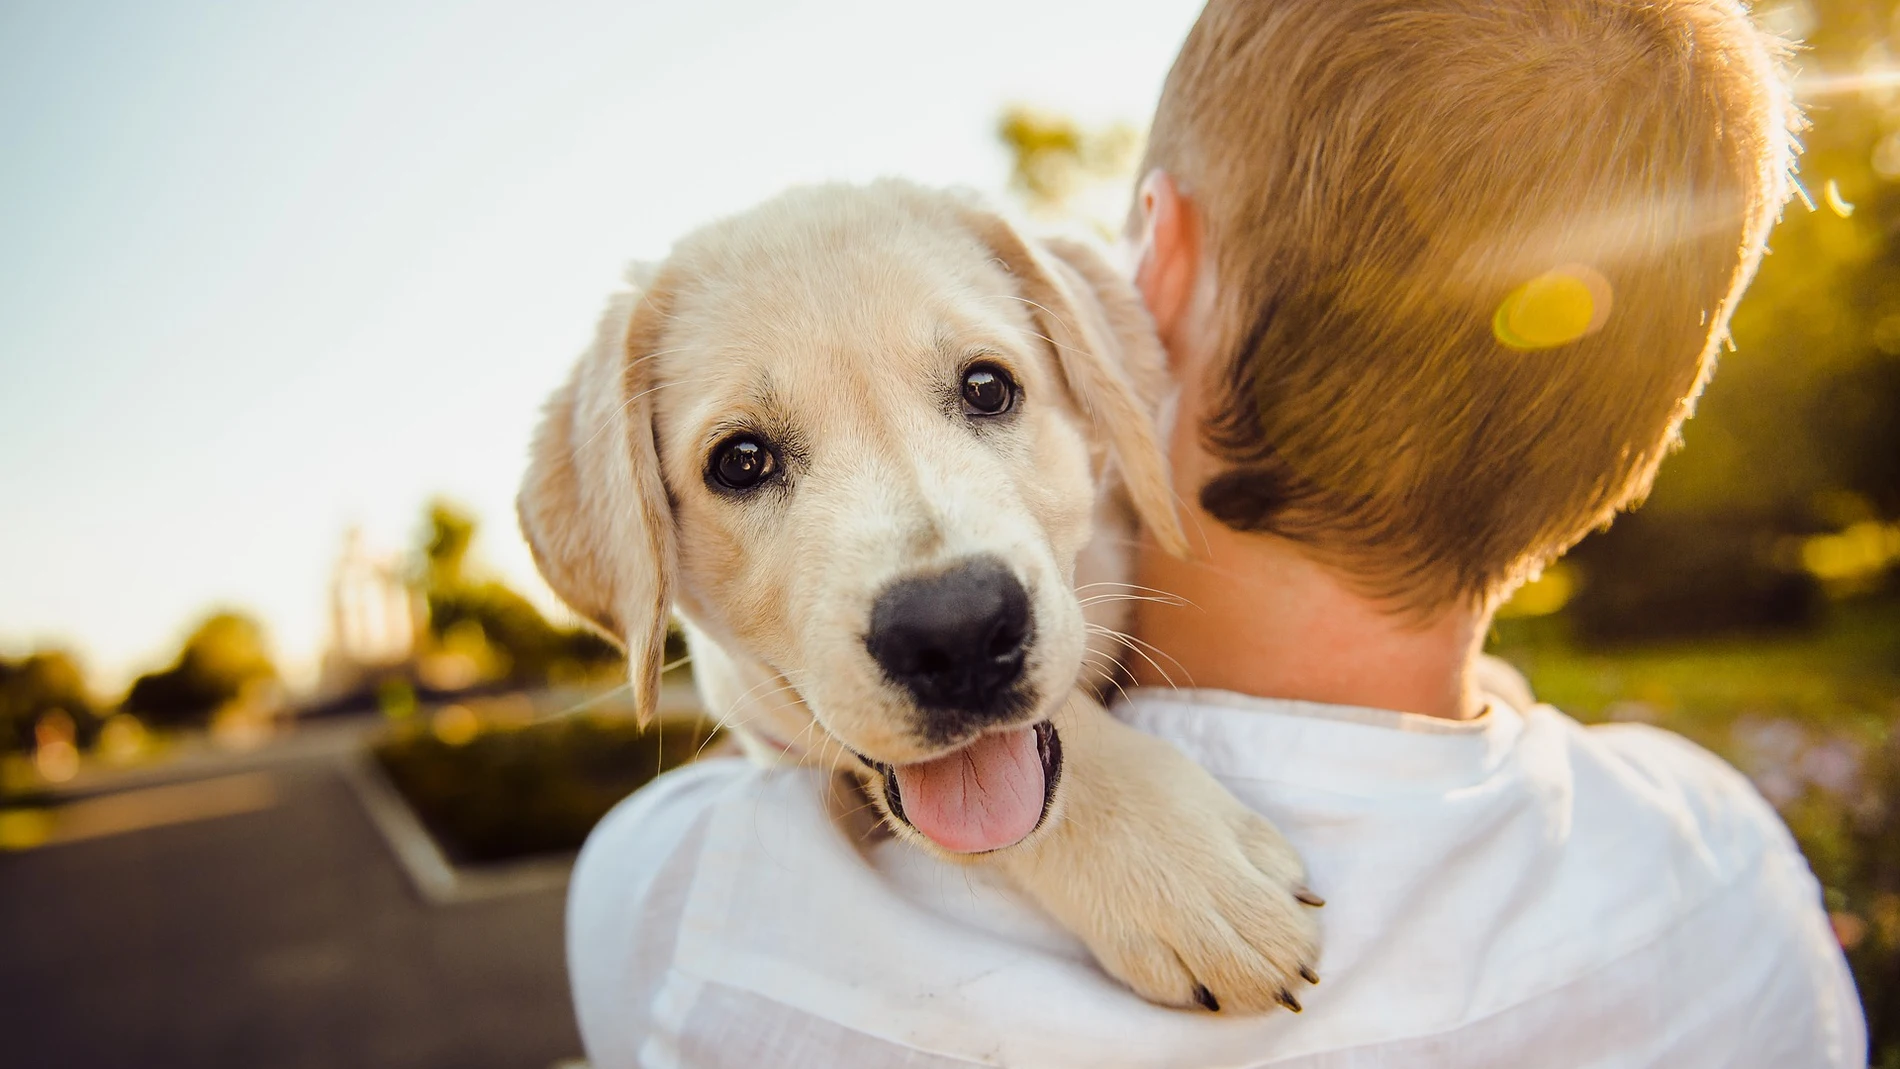 Los perros son capaces de reconocer diferentes idiomas y palabras sin sentido, según un estudio